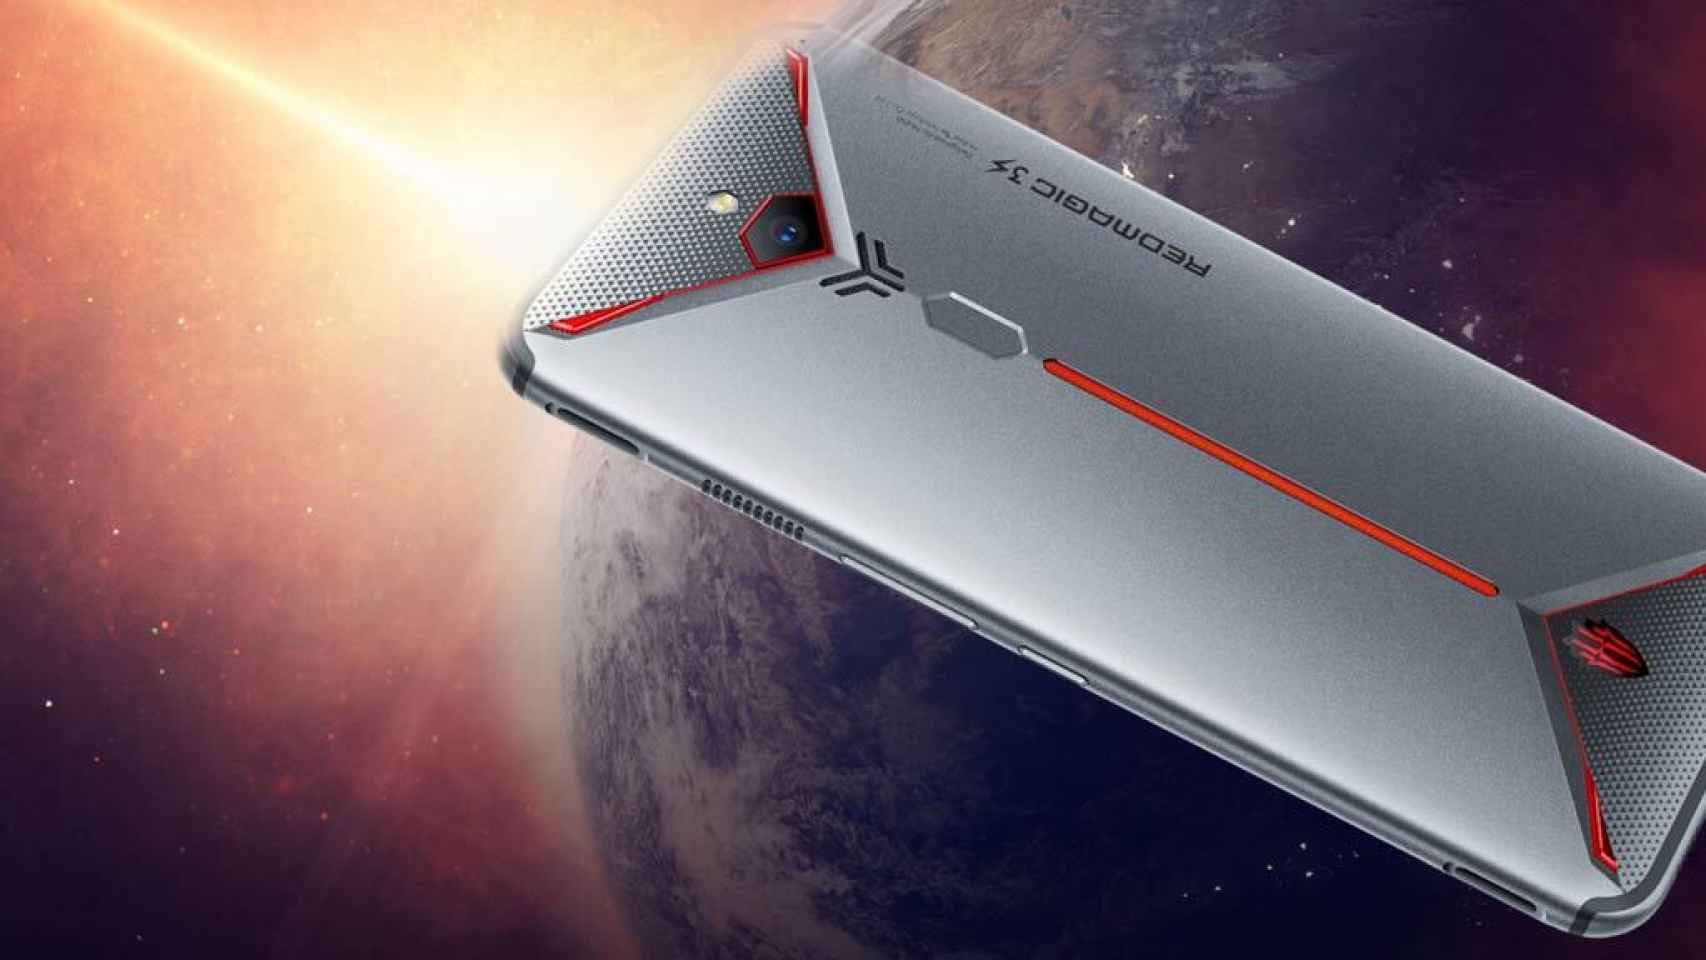 Nubia Red Magic 3: el nuevo smartphone gamer con ventilador y